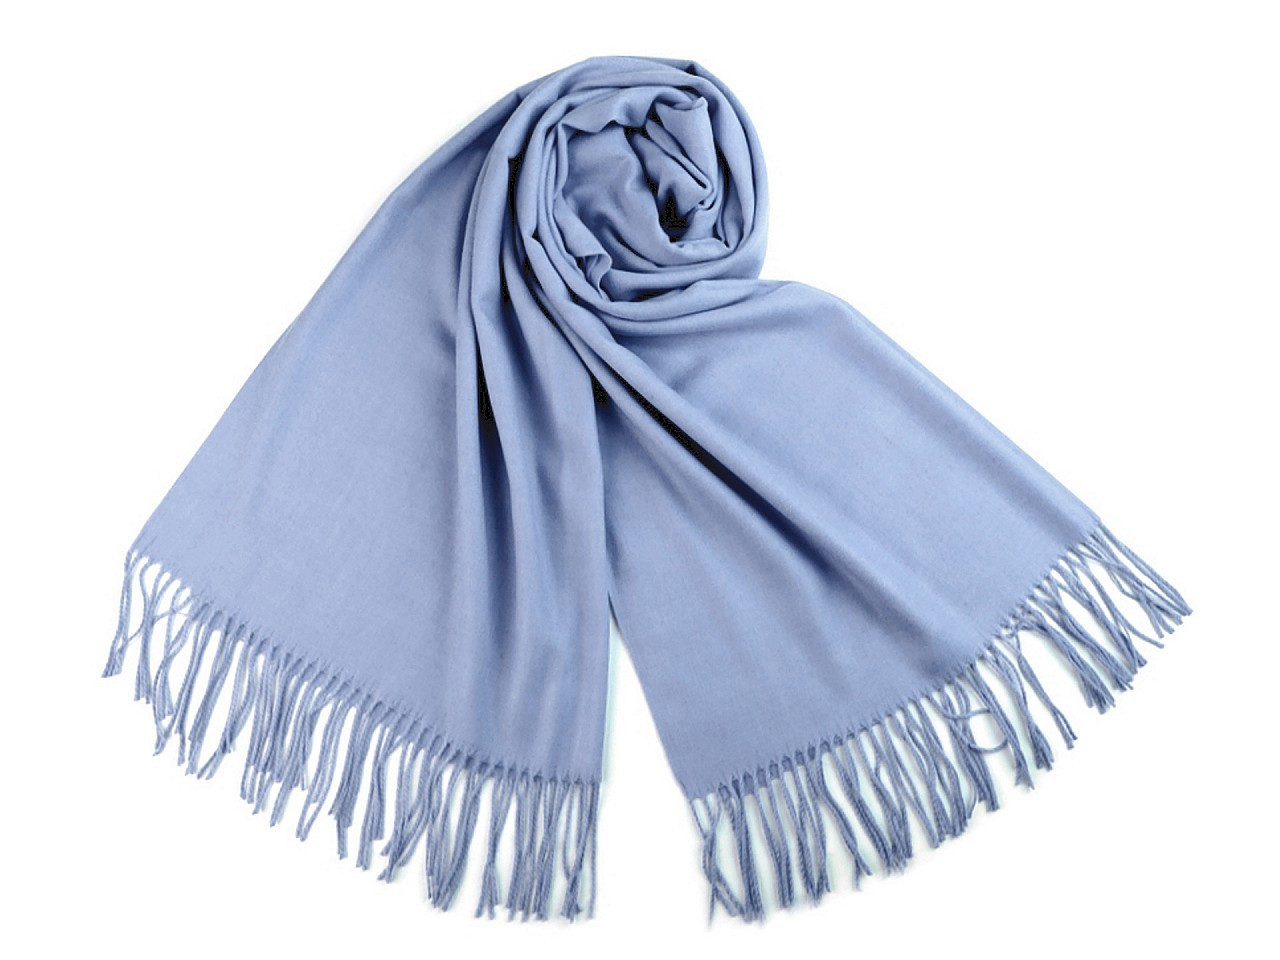 Šátek / šála typu pashmina s třásněmi 65x180 cm, barva 29 modrá světlá